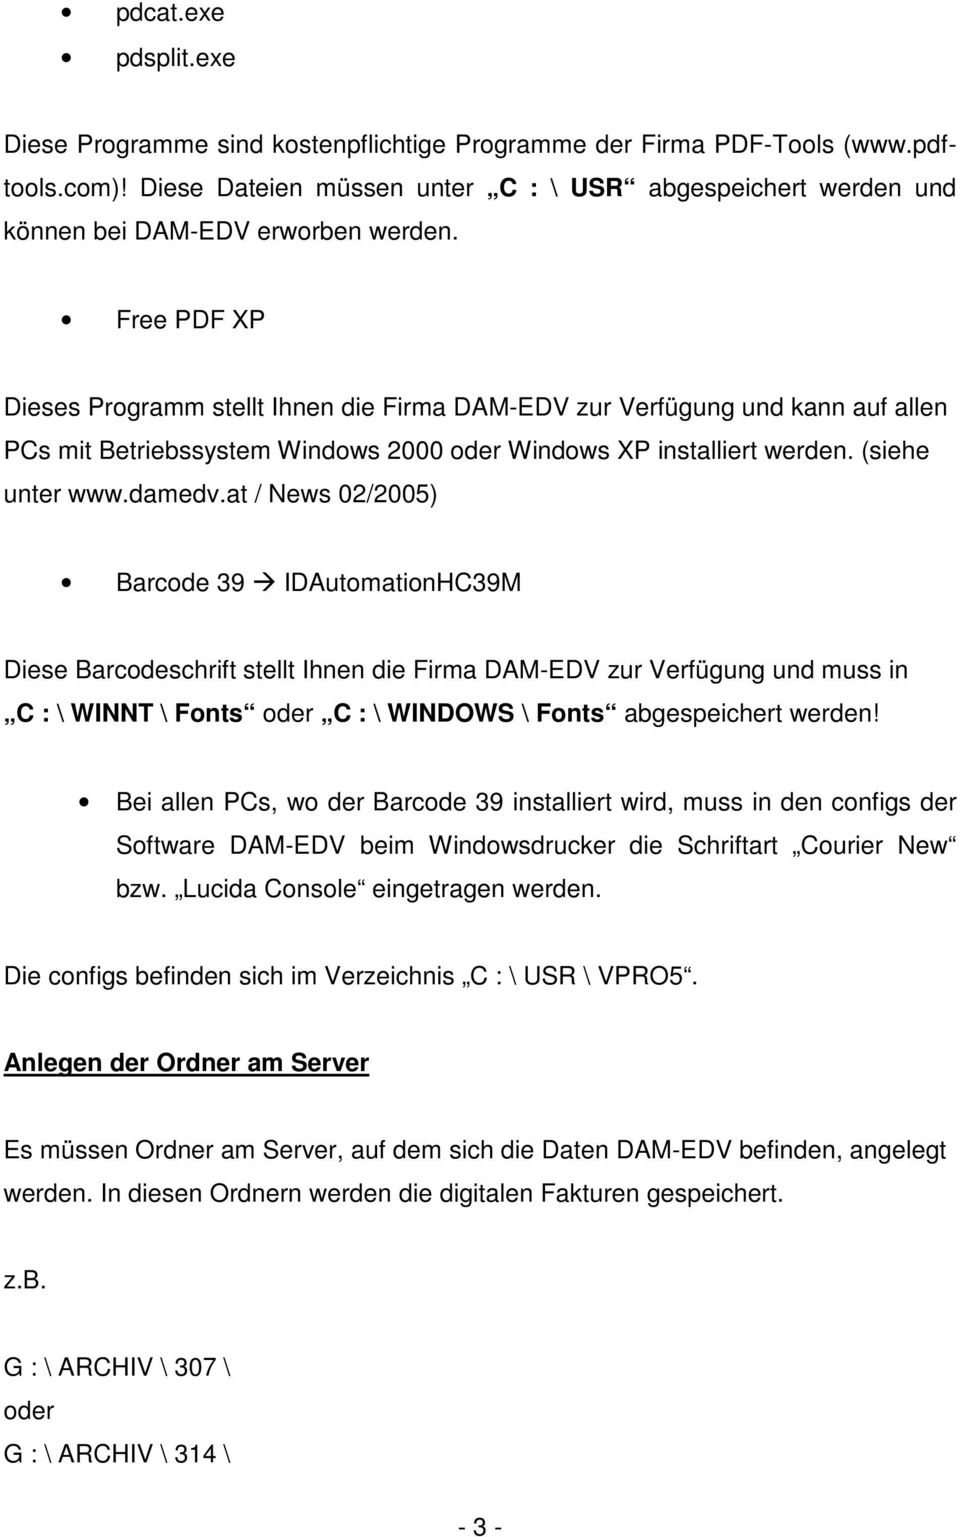 Free PDF XP Dieses Programm stellt Ihnen die Firma DAM-EDV zur Verfügung und kann auf allen PCs mit Betriebssystem Windows 2000 oder Windows XP installiert werden. (siehe unter www.damedv.